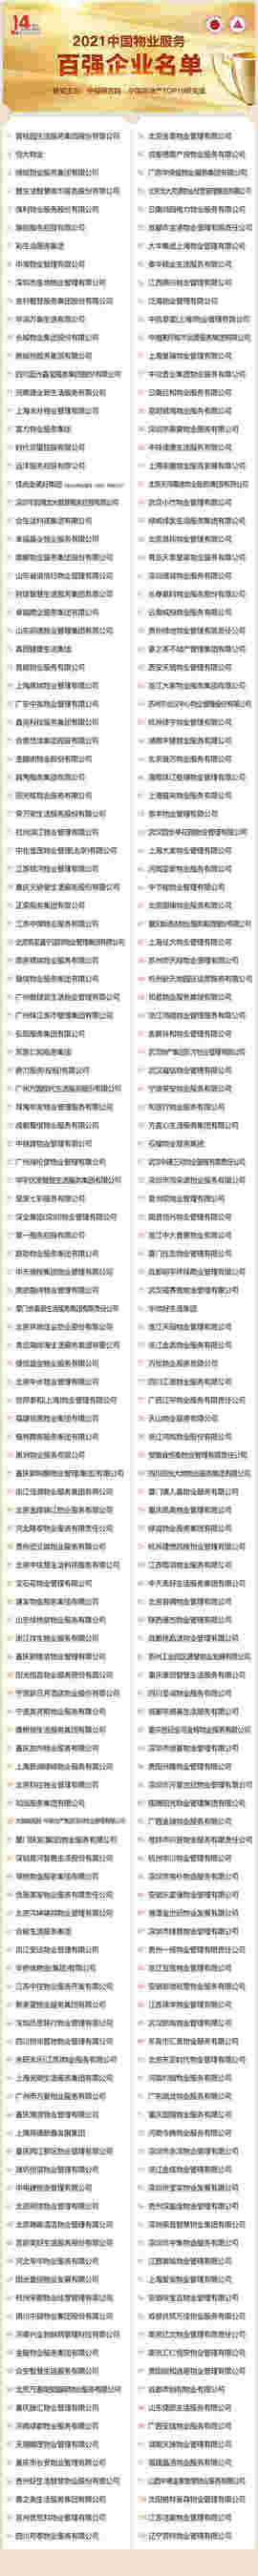 黄瑜：发布2021中国物业服务百强优秀企业名单